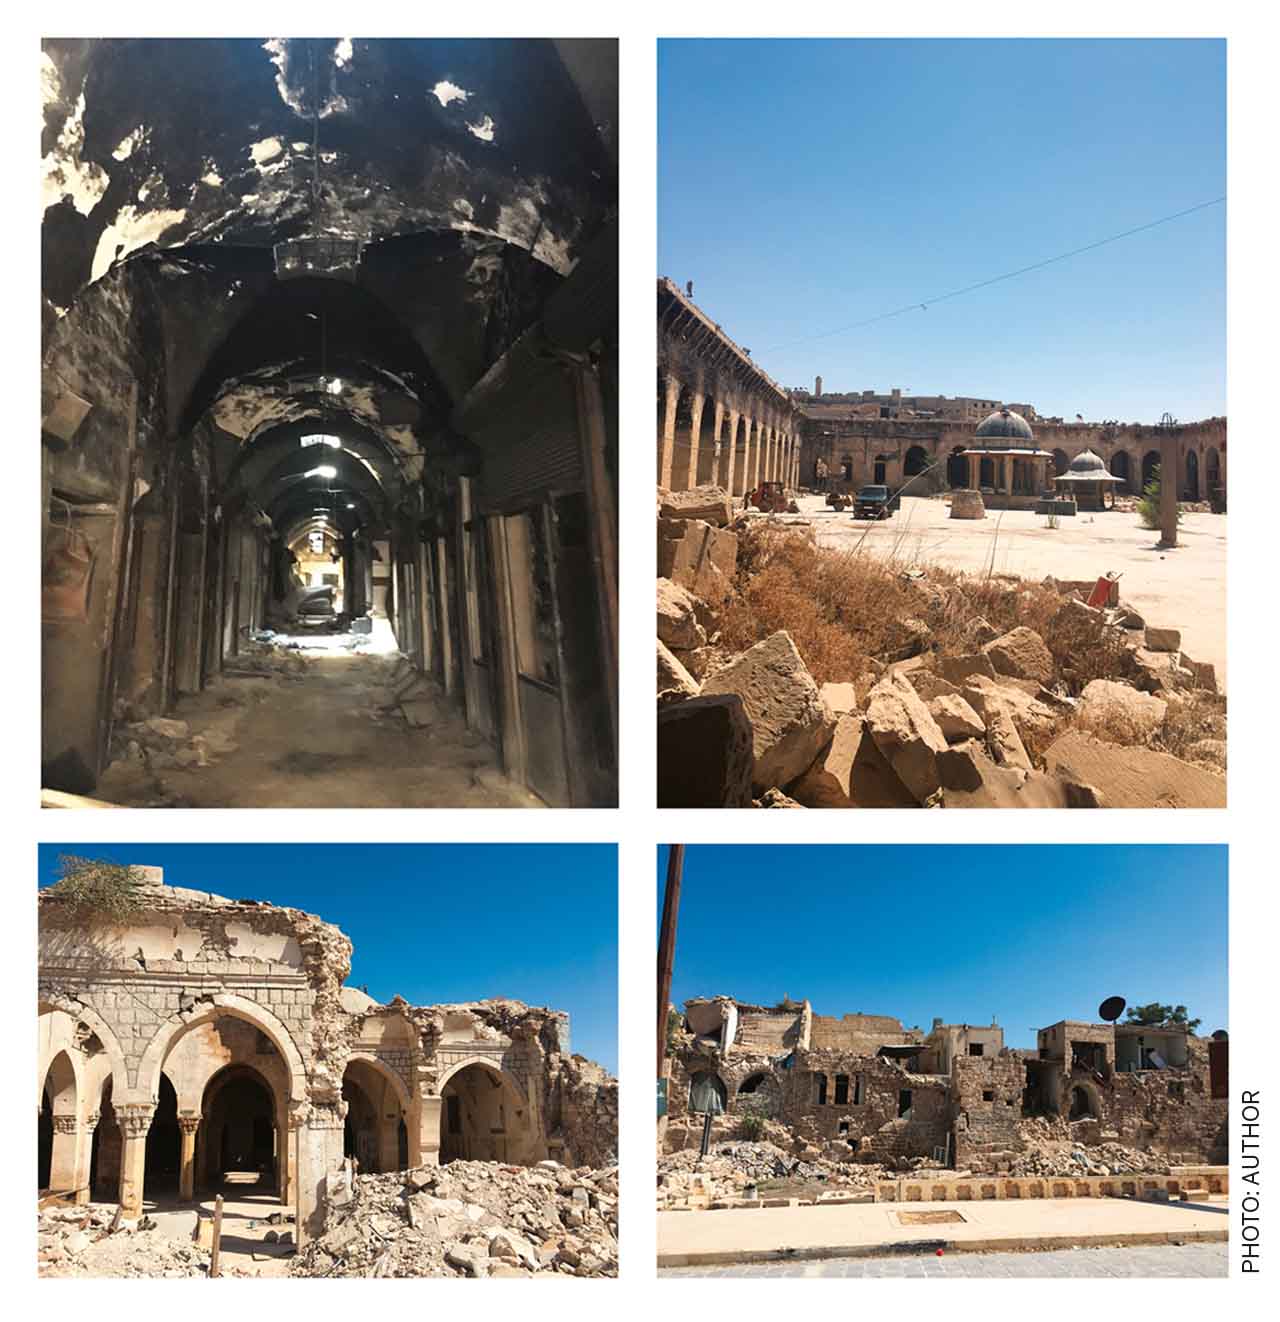 Aleppo-Rebuilding-Cities-Crisis-Damage-old-city